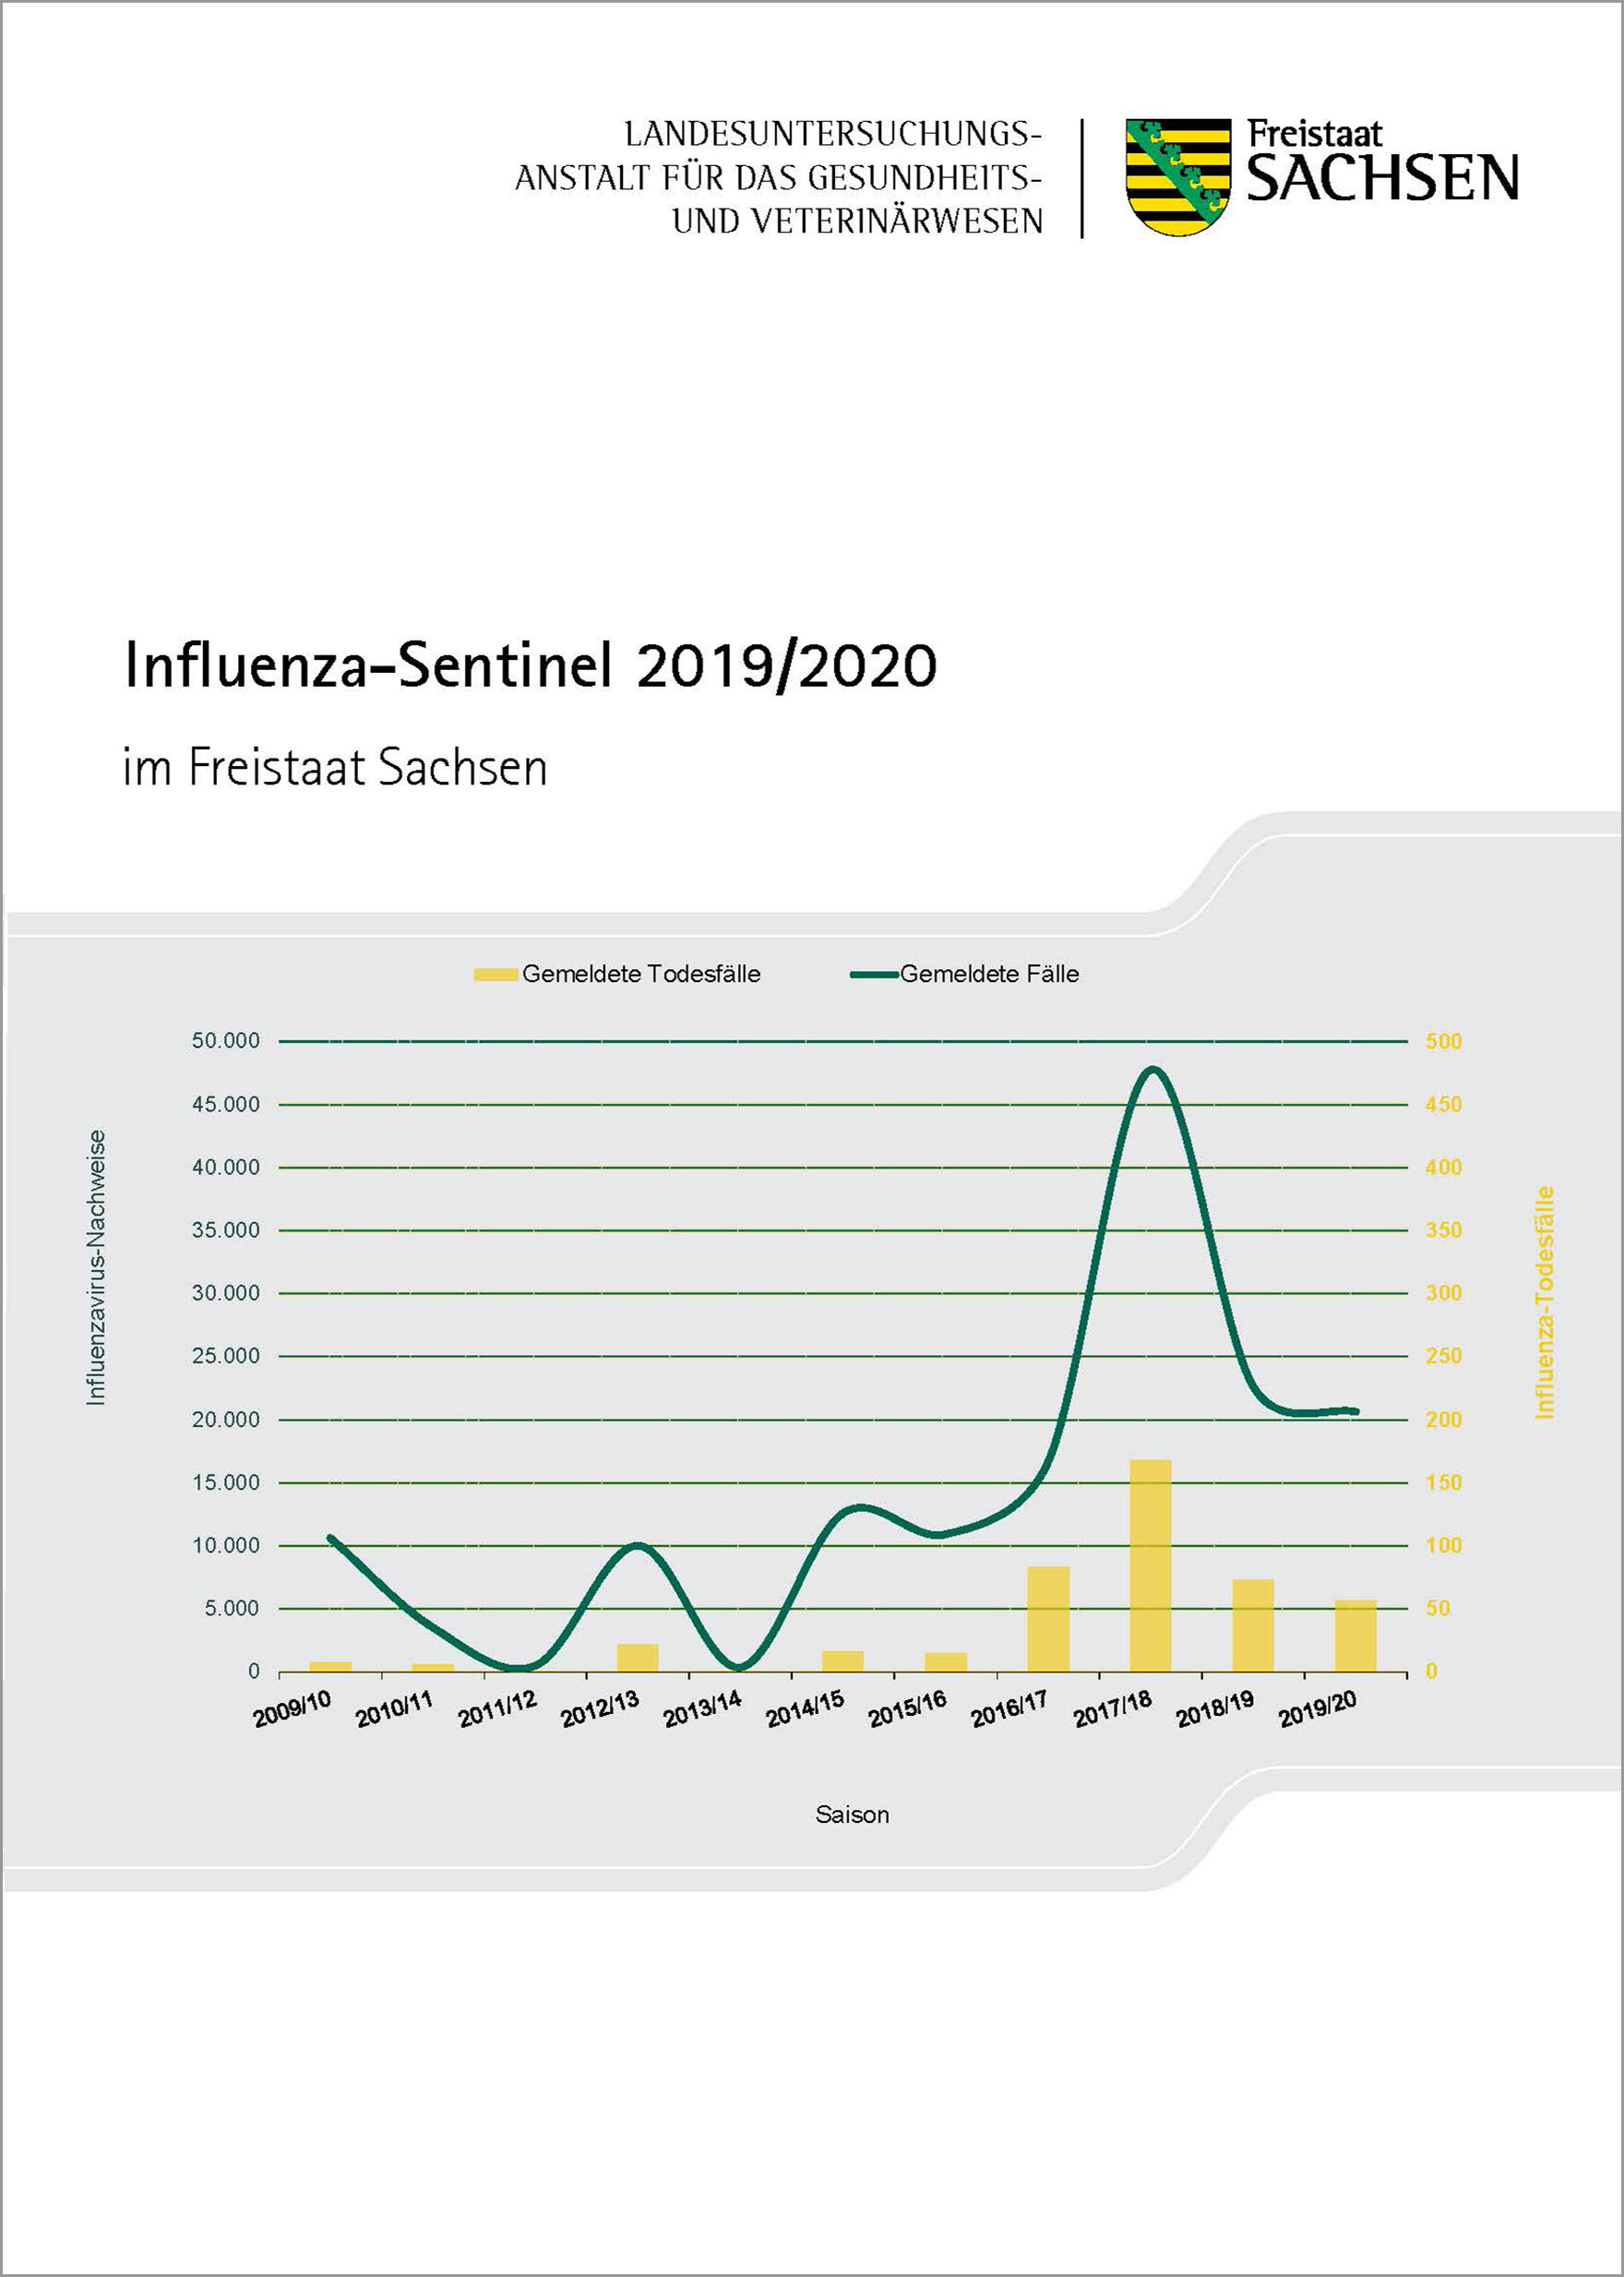 Titelbild des Influenza Jahresberichtes 2019 / 2020